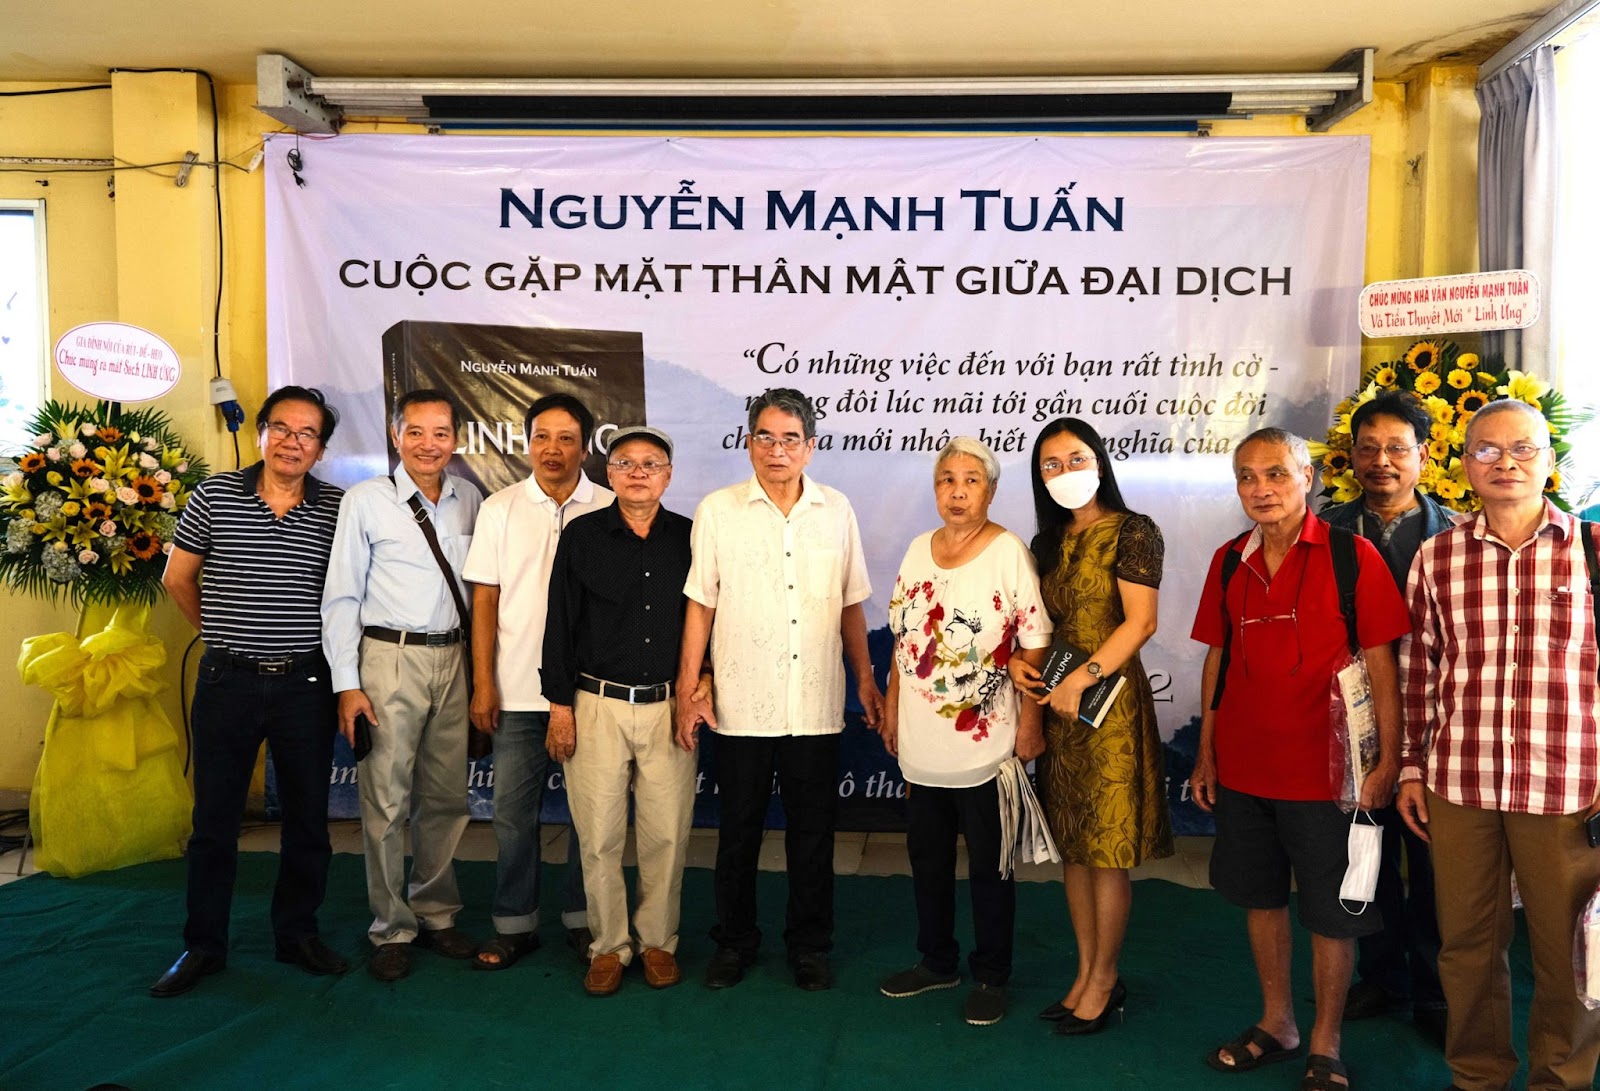 Nhà văn Nguyễn Mạnh Tuấn kể chuyện hành trình tâm linh đậm tính lịch sử dân tộc - 5